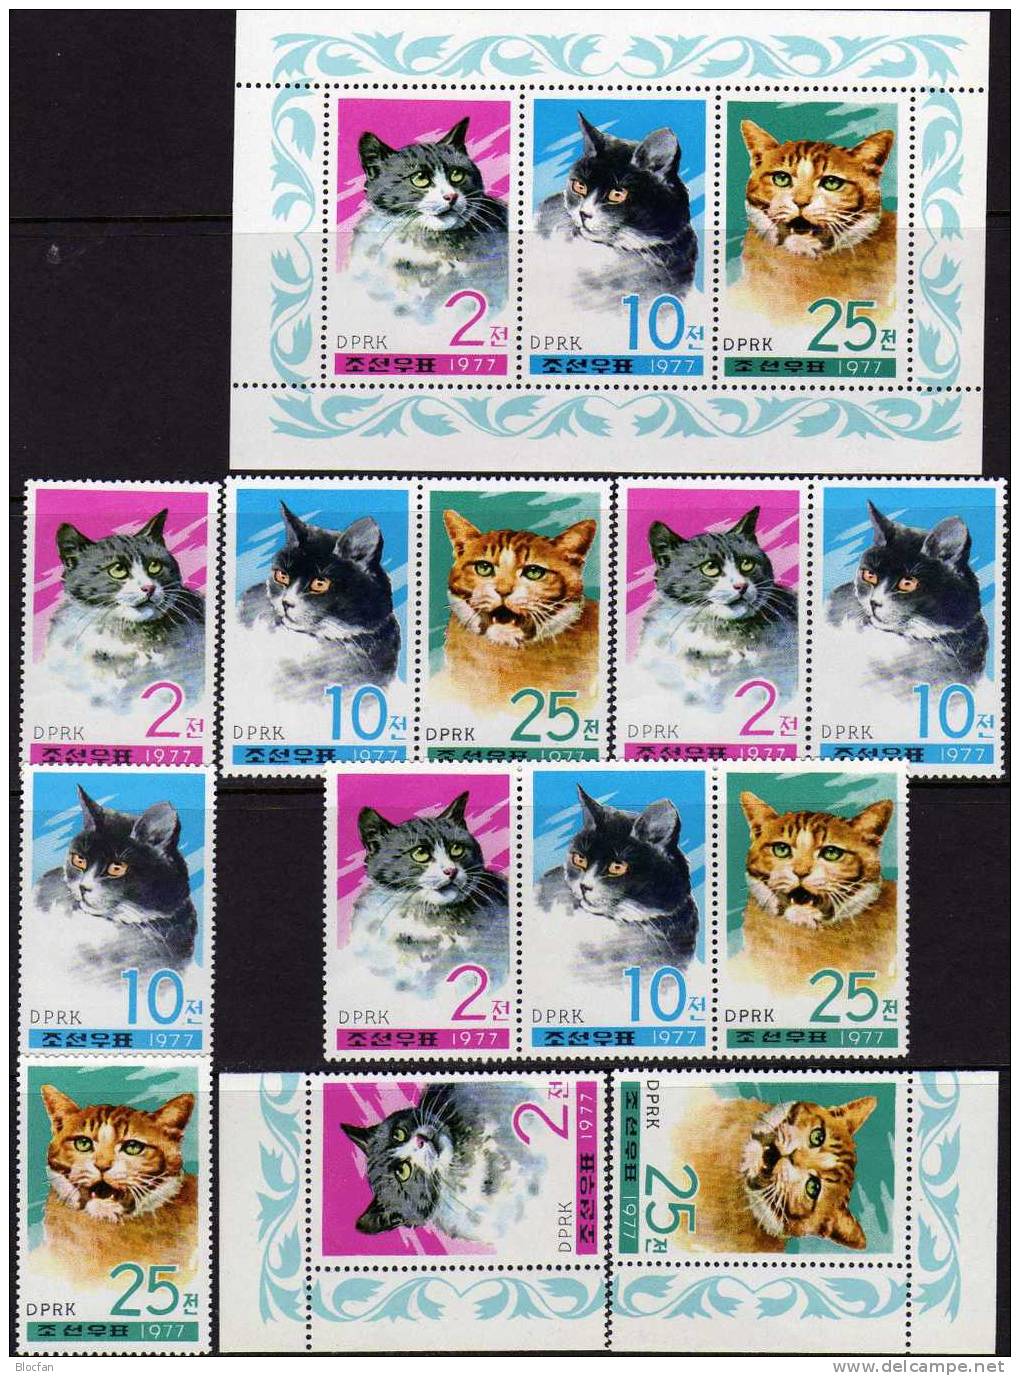 Maxi-Set Hauskatzen 1977 Korea 1659/1,2x ER,3x ZD+Kleinbogen ** 50€ WWF Naturschutz Katzen Hb M/s Cat Sheetlets Bf Corea - Corea (...-1945)